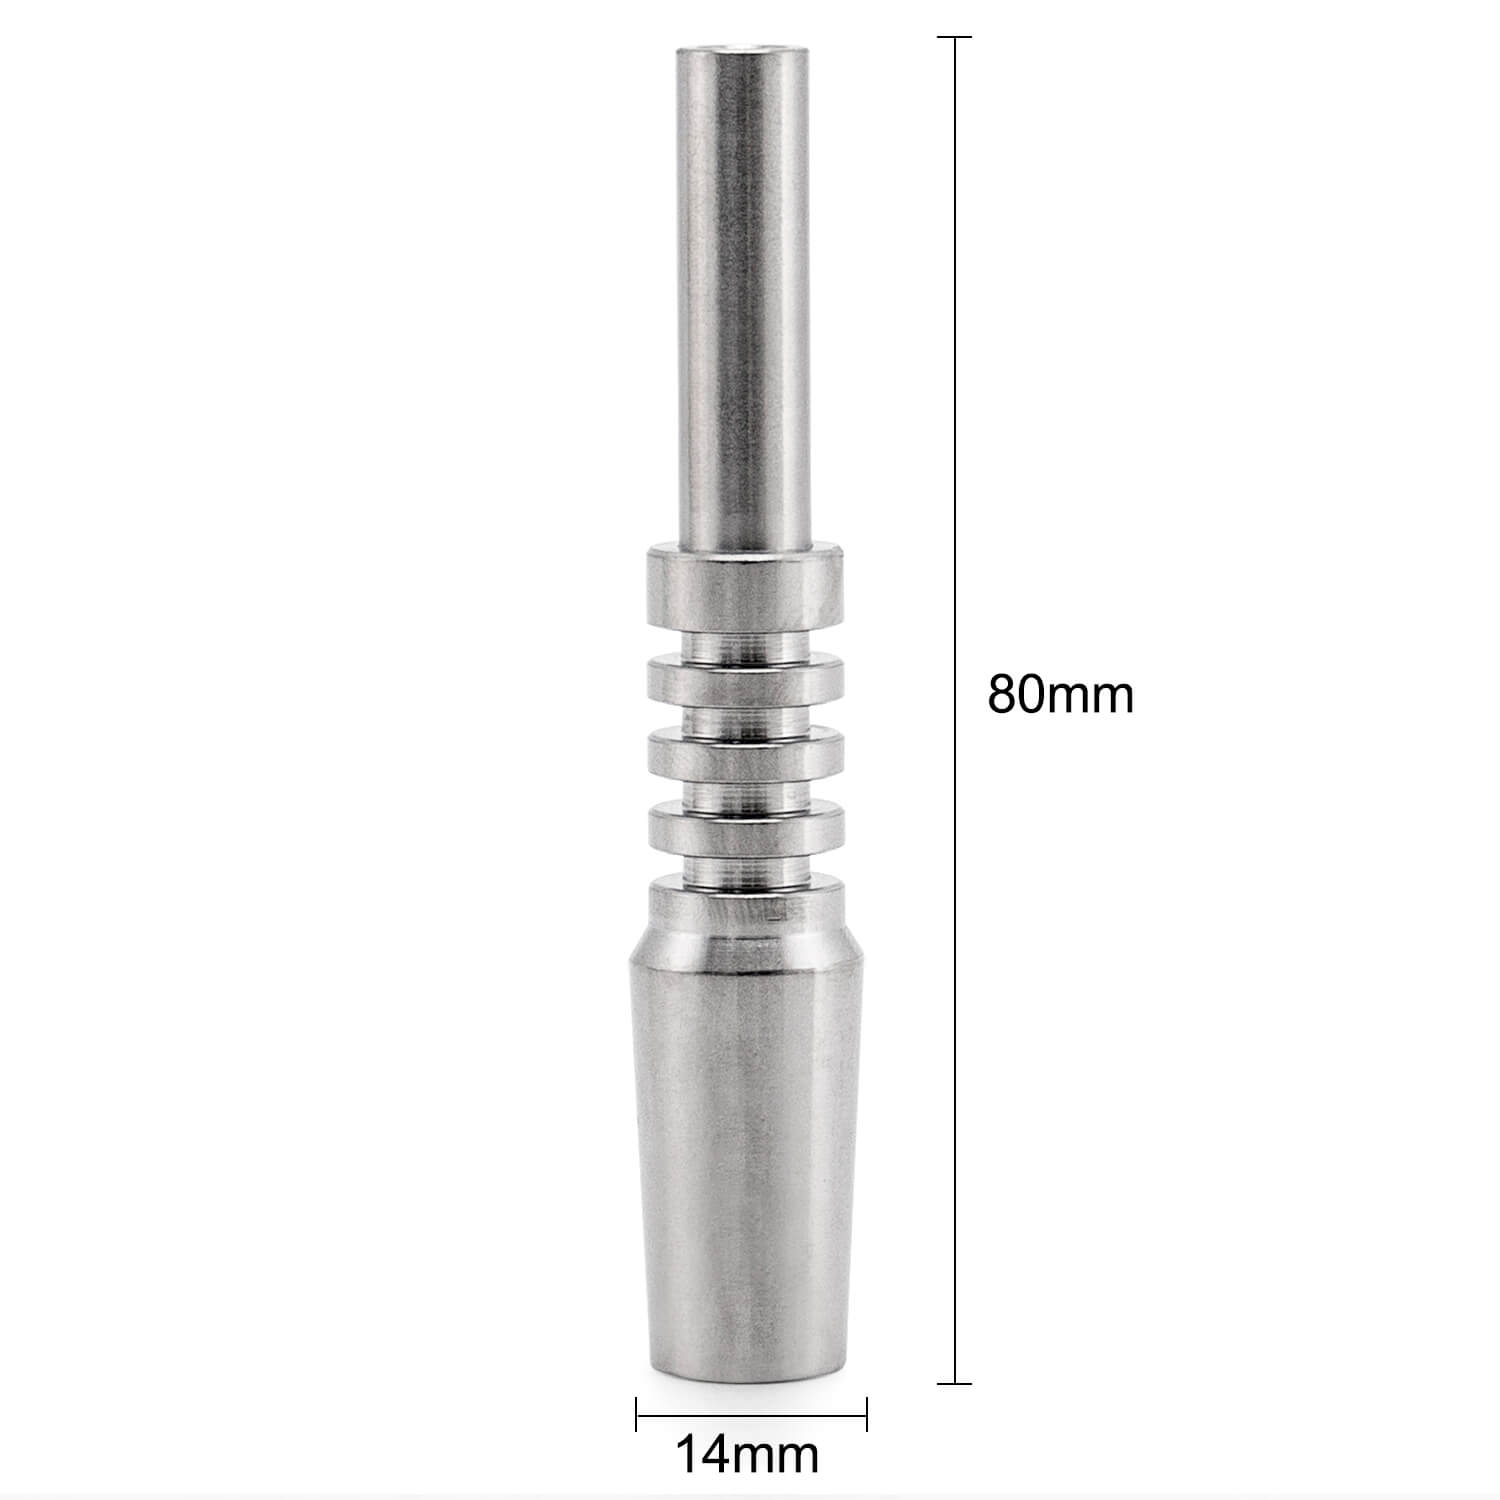 Nectar Collector Titanium Tip 14mm